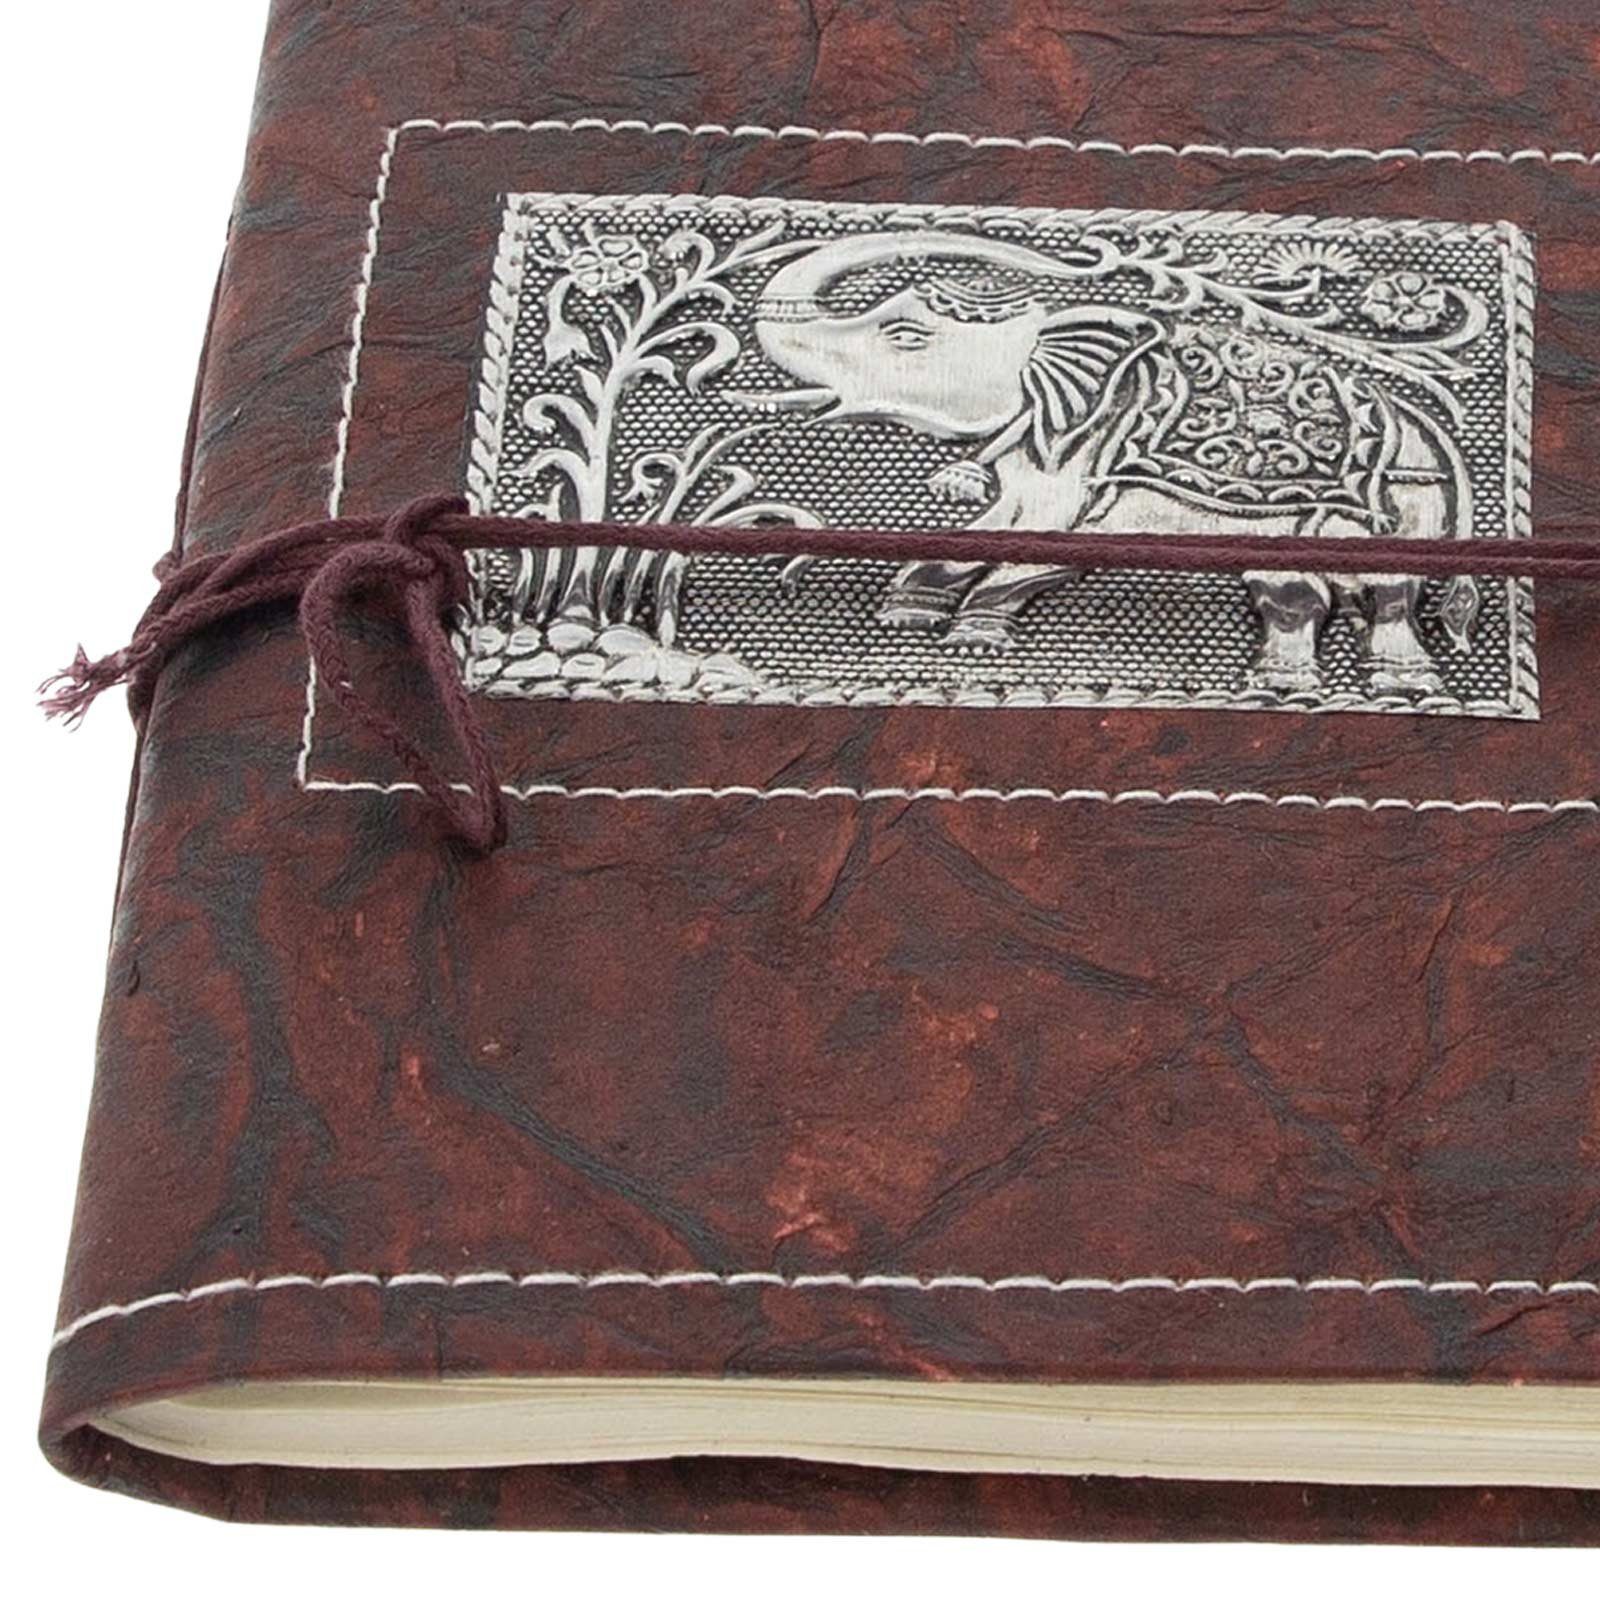 KUNST UND 20x15cm Tagebuch Elefant Notizbuch Poesiealbum Tagebuch handgefertigt-Geprägtes MAGIE